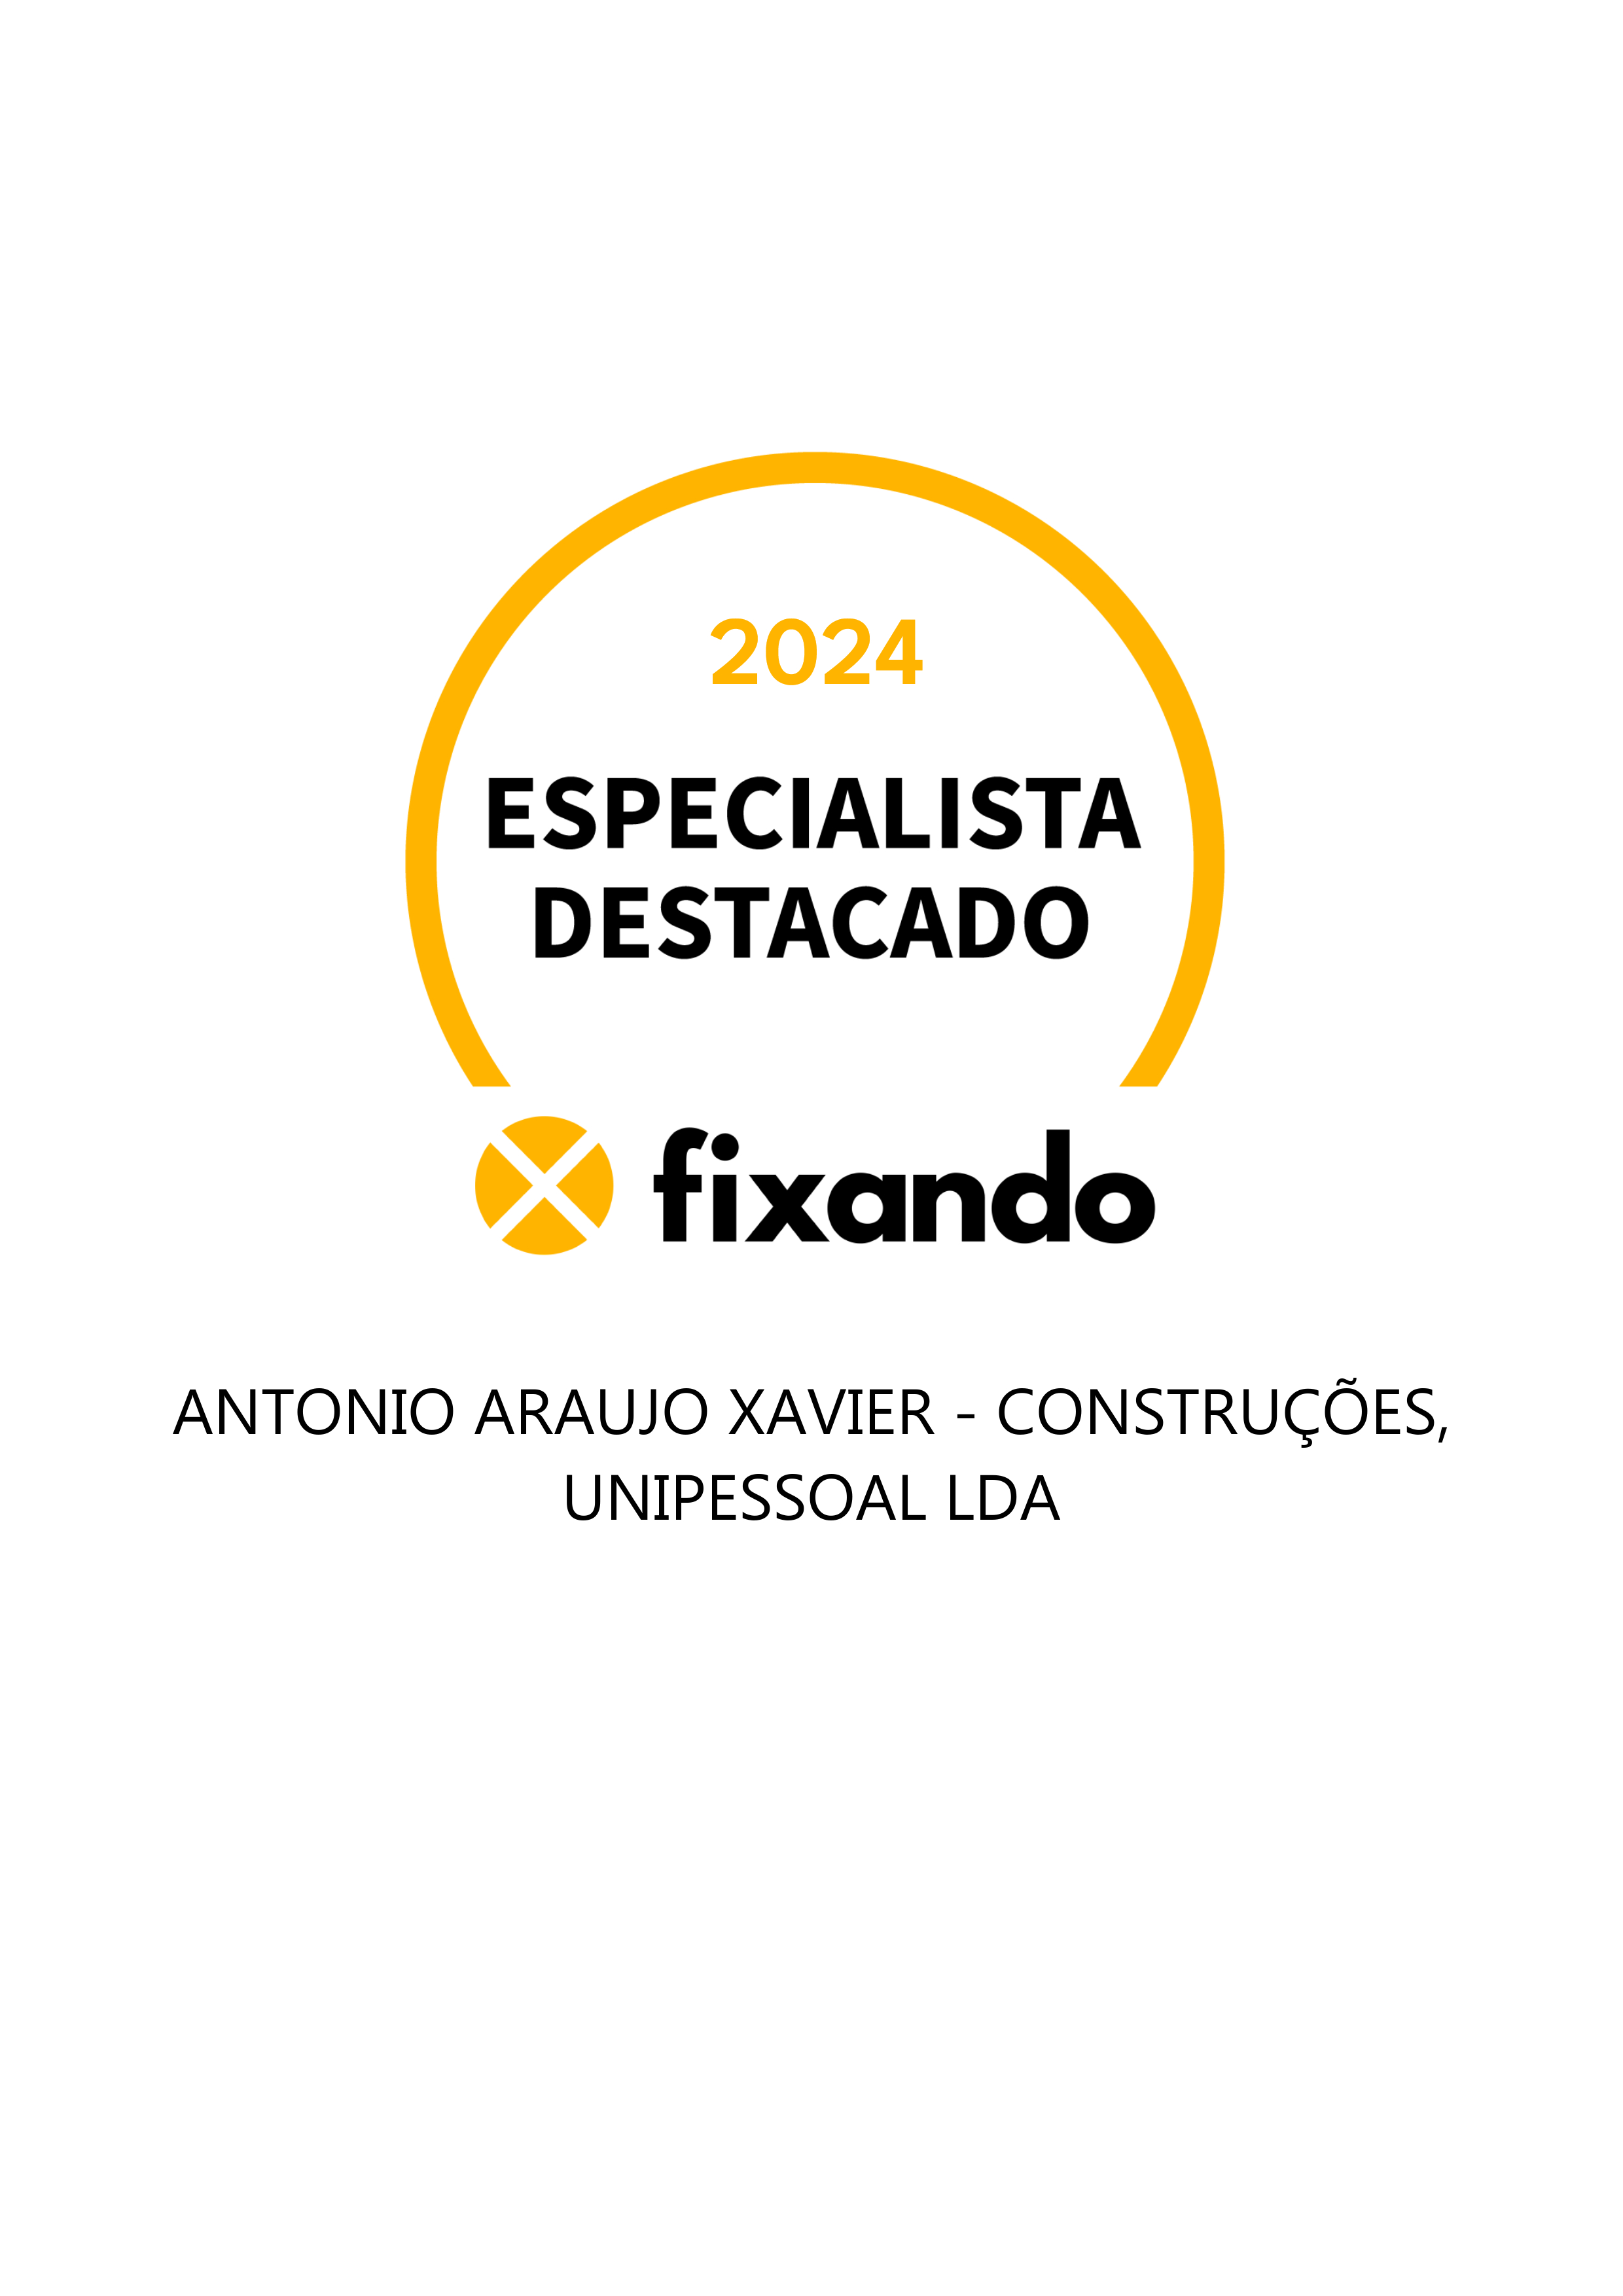 ANTONIO ARAUJO XAVIER - CONSTRUÇÕES, UNIPESSOAL LDA - Loulé - Instalação de Pavimento em Pedra ou Ladrilho